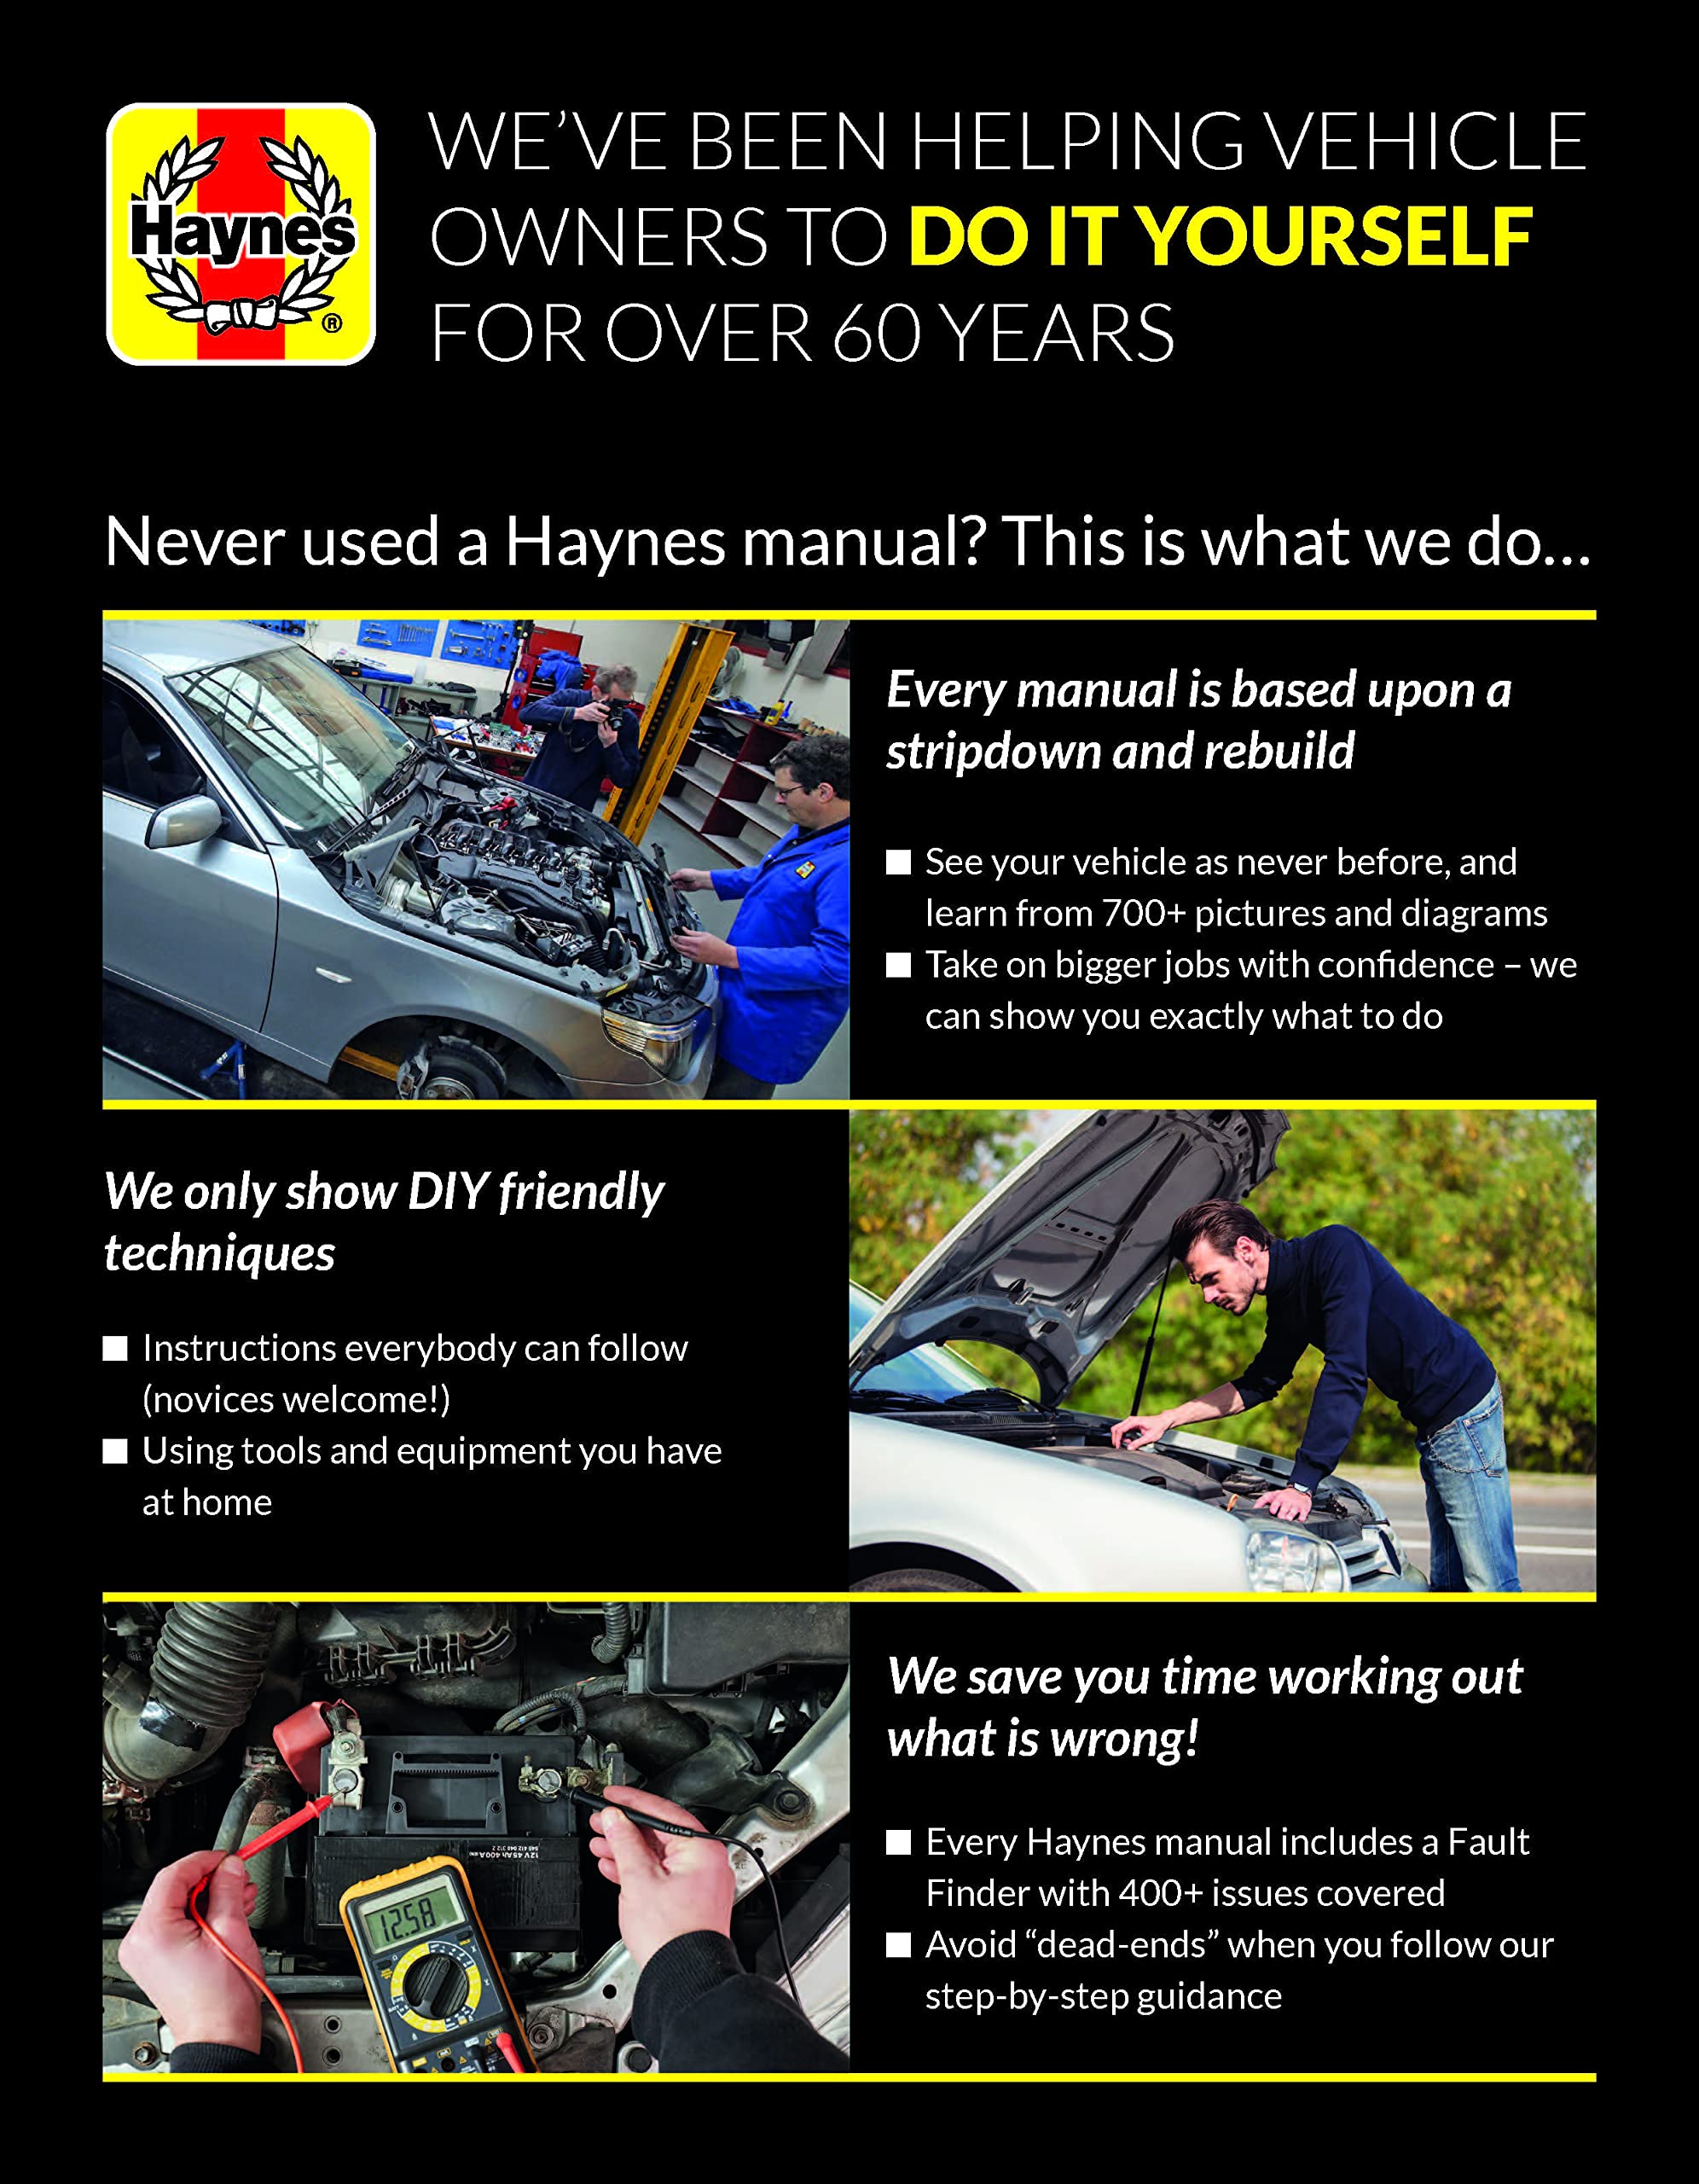 Honda Civic (01-11) & CR-V (02-11) Haynes Repair Manual (USA) (Paperback)